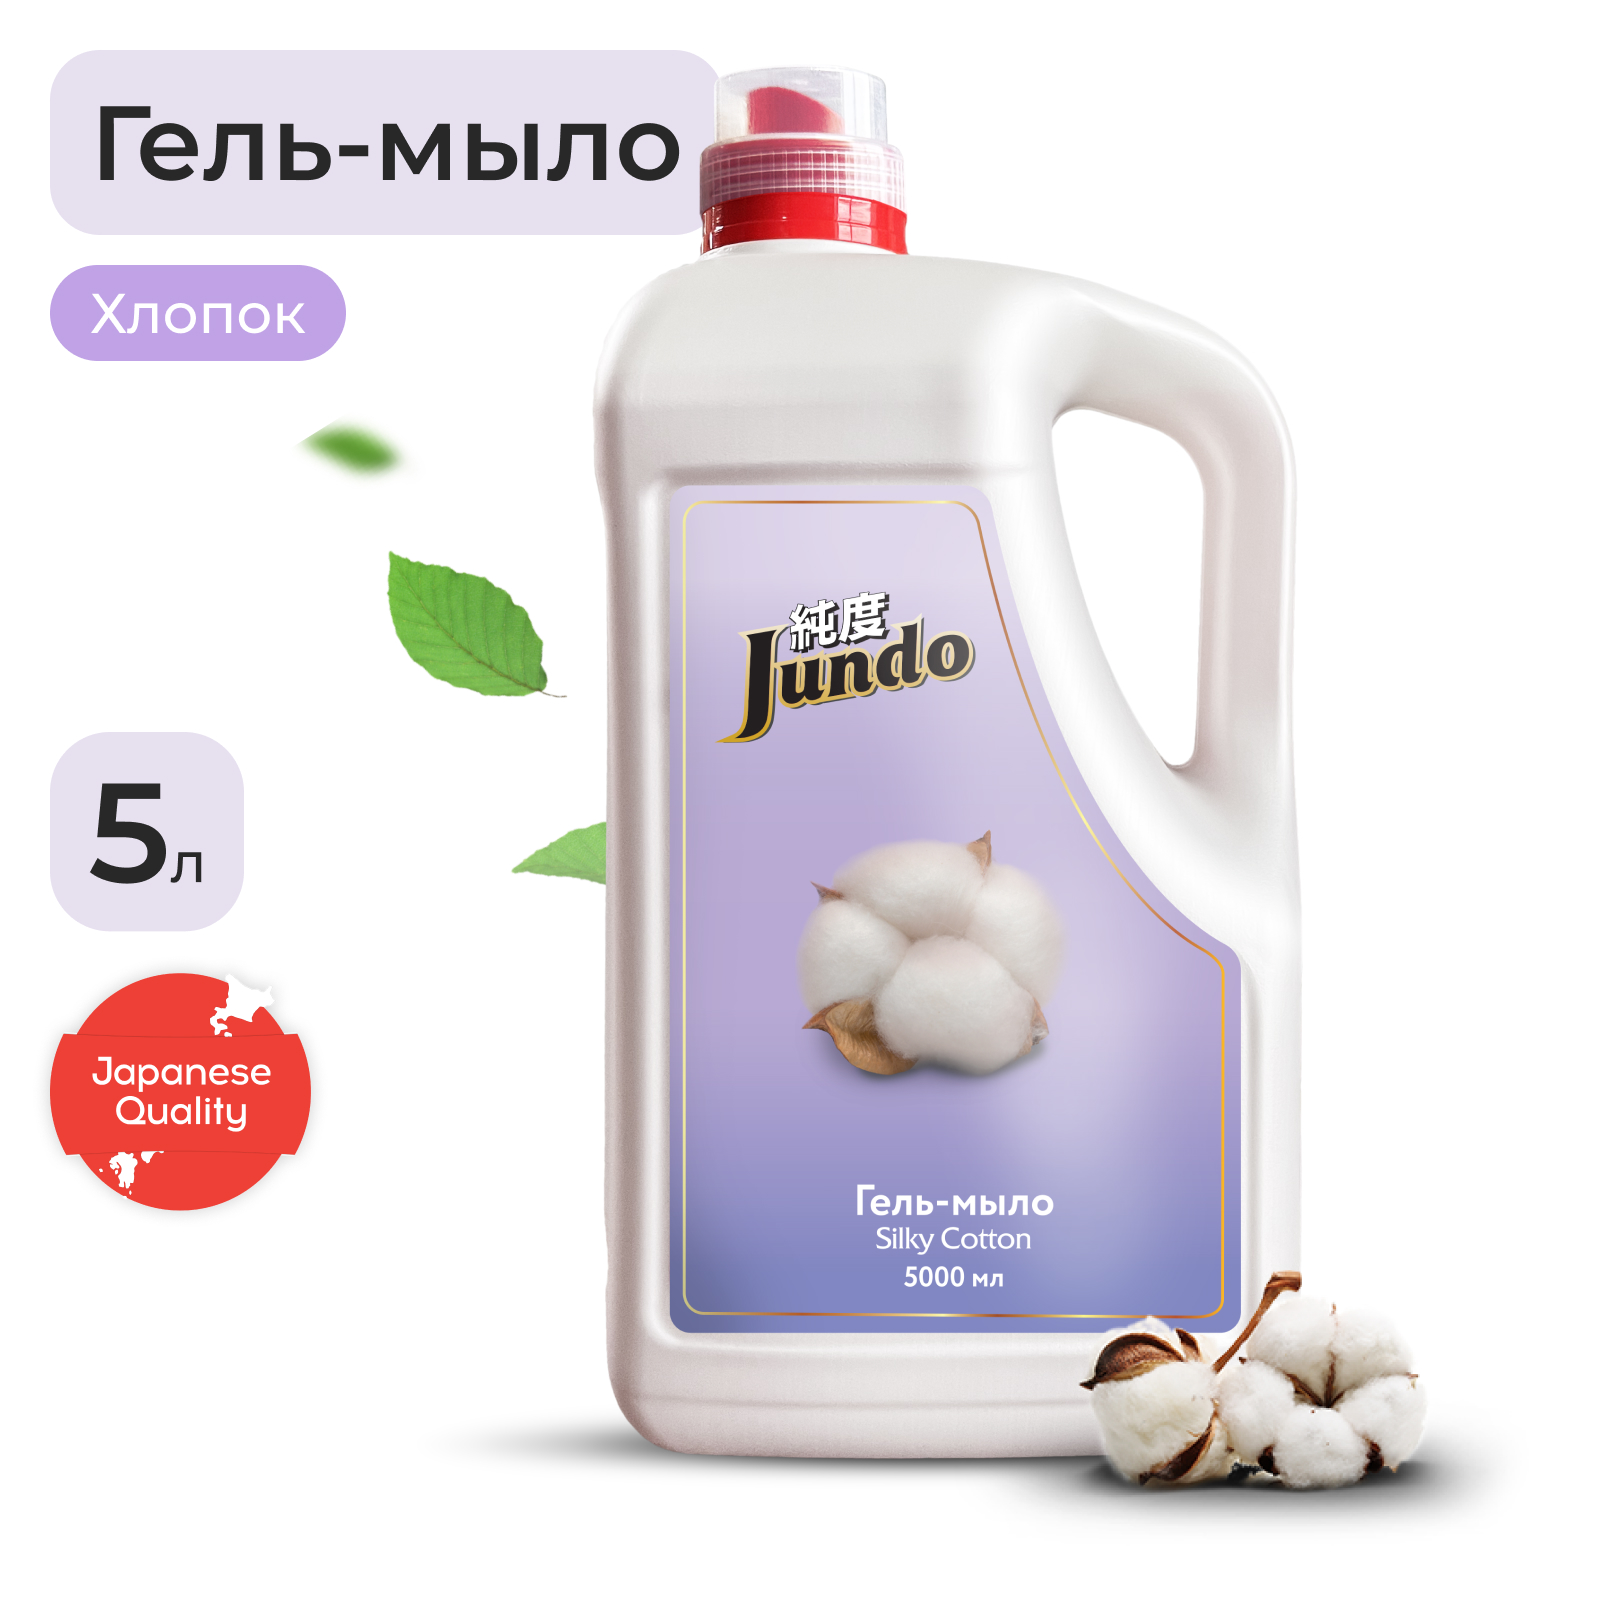 Гель-мыло Jundo Silky cotton 5 л